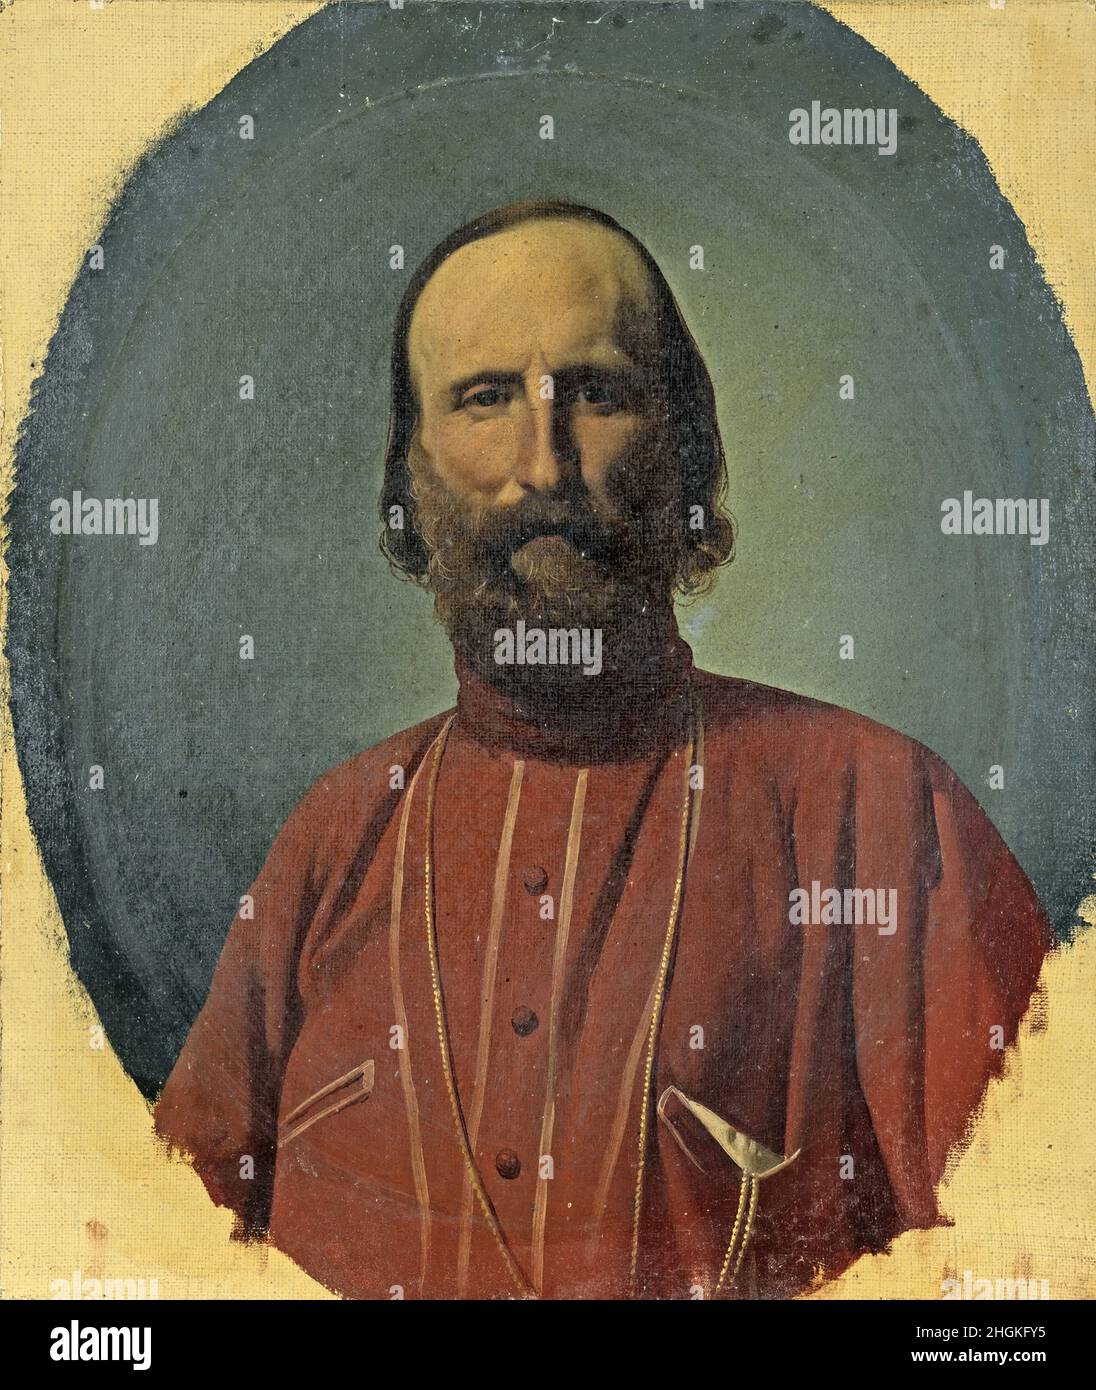 Chierici Gaetano - Private Collection - Portrait of Giuseppe Garibaldi - 1865_70 - oil on canvas 34 x 28 cm - Stock Photo